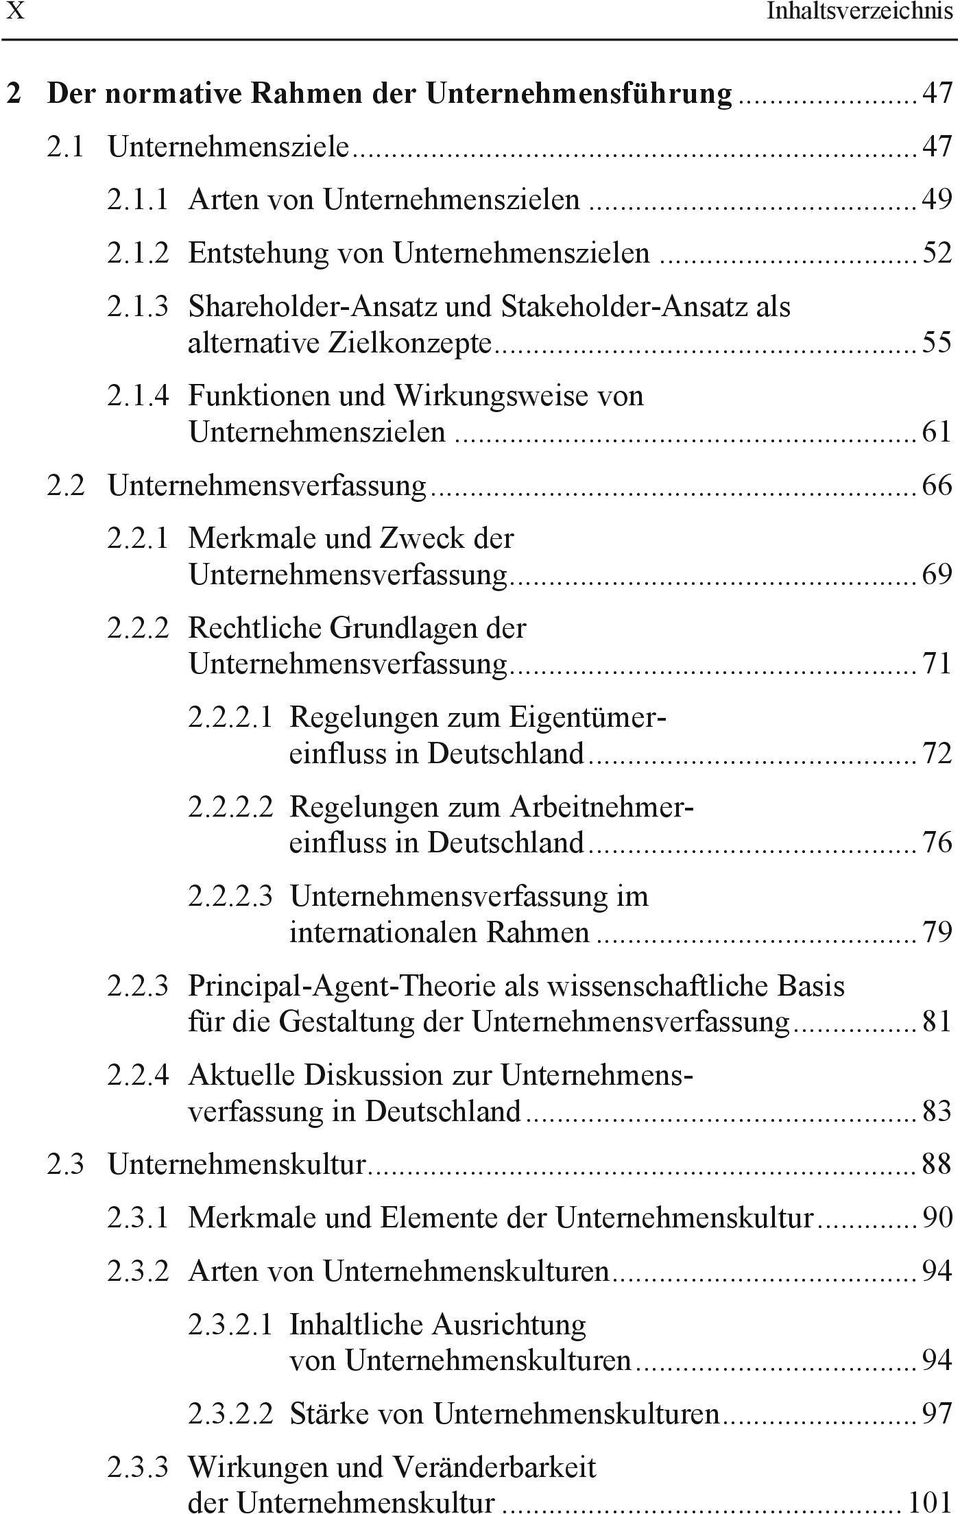 .. 71 2.2.2.1 Regelungen zum Eigentümereinfluss in Deutschland... 72 2.2.2.2 Regelungen zum Arbeitnehmereinfluss in Deutschland... 76 2.2.2.3 Unternehmensverfassung im internationalen Rahmen... 79 2.